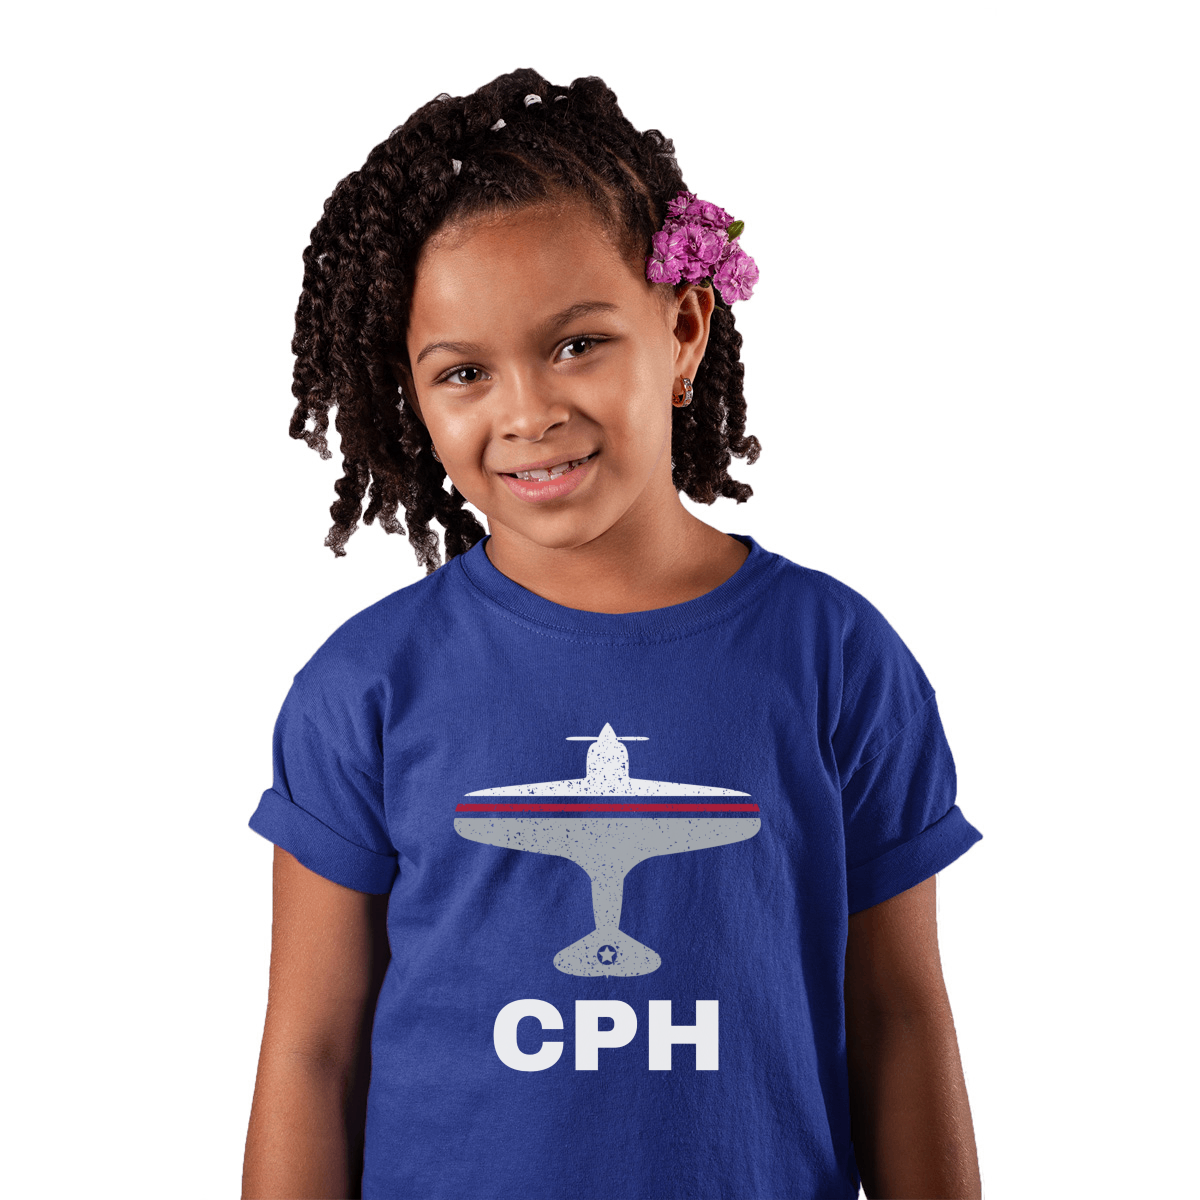 Fly Copenhagen CPH Airport Kids T-shirt | Blue